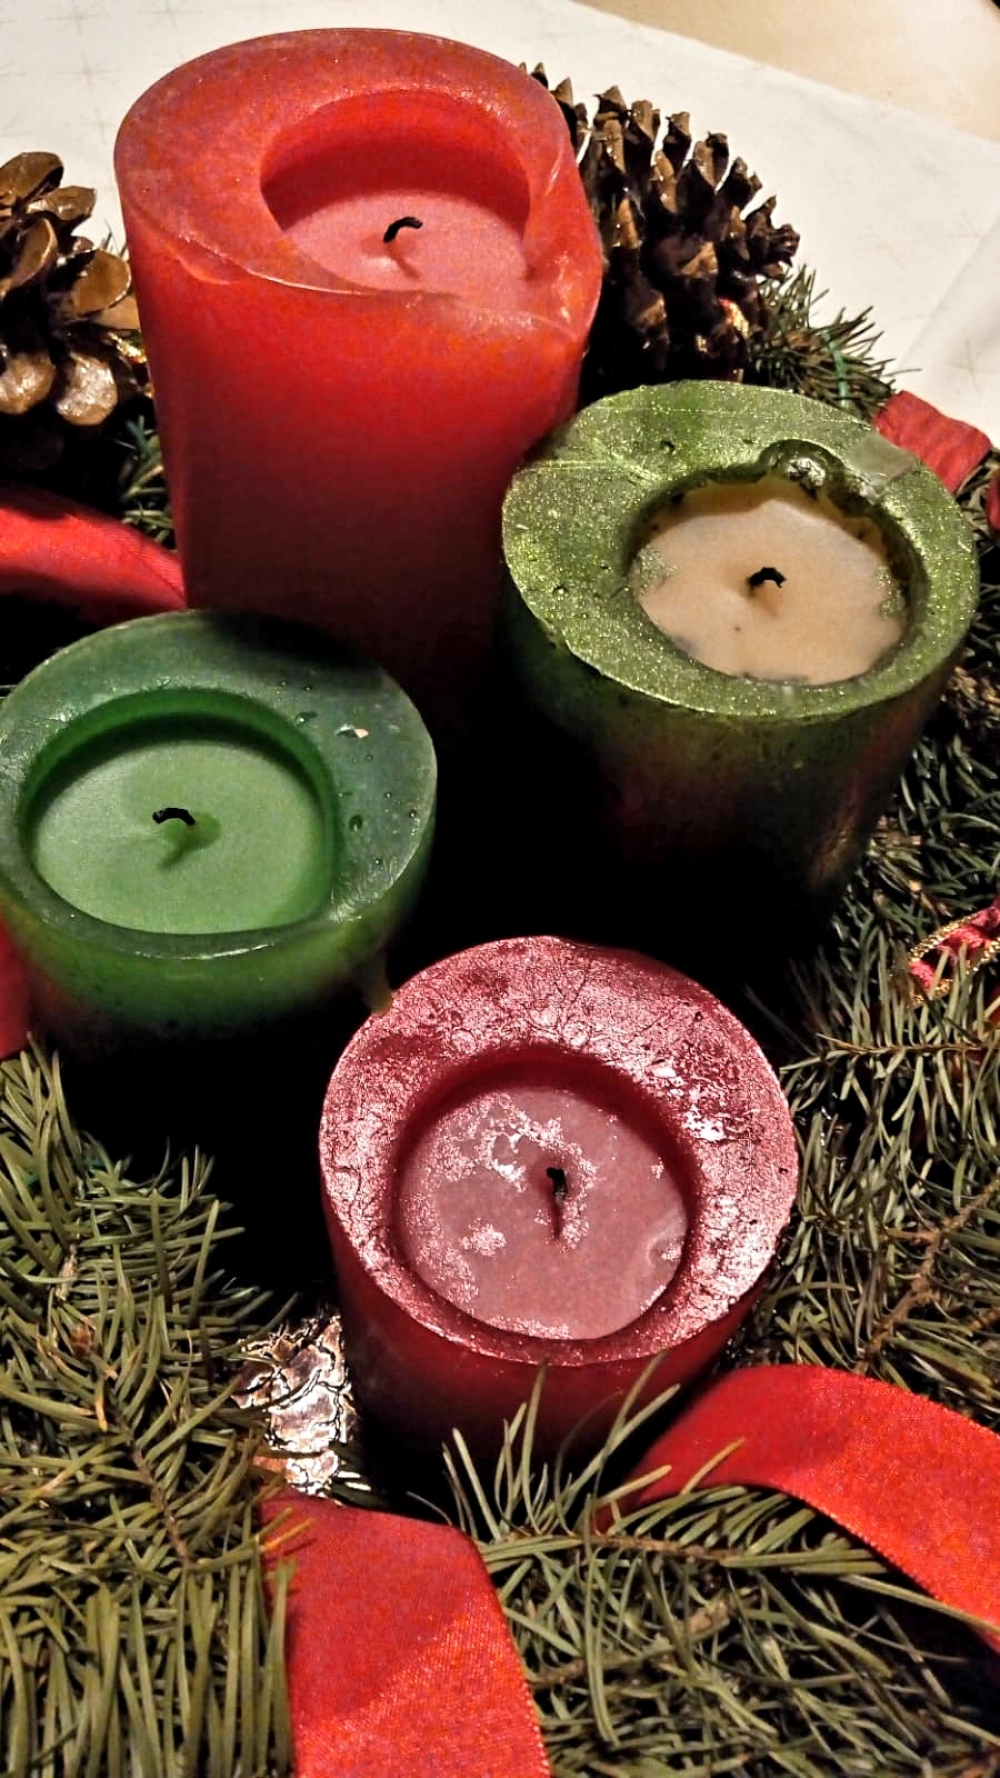 На венке из еловых веток догорает последняя свеча, пуансеттия, или рождественская звезда, распустилась к сроку, это значит, что чудо Рождества совсем близко